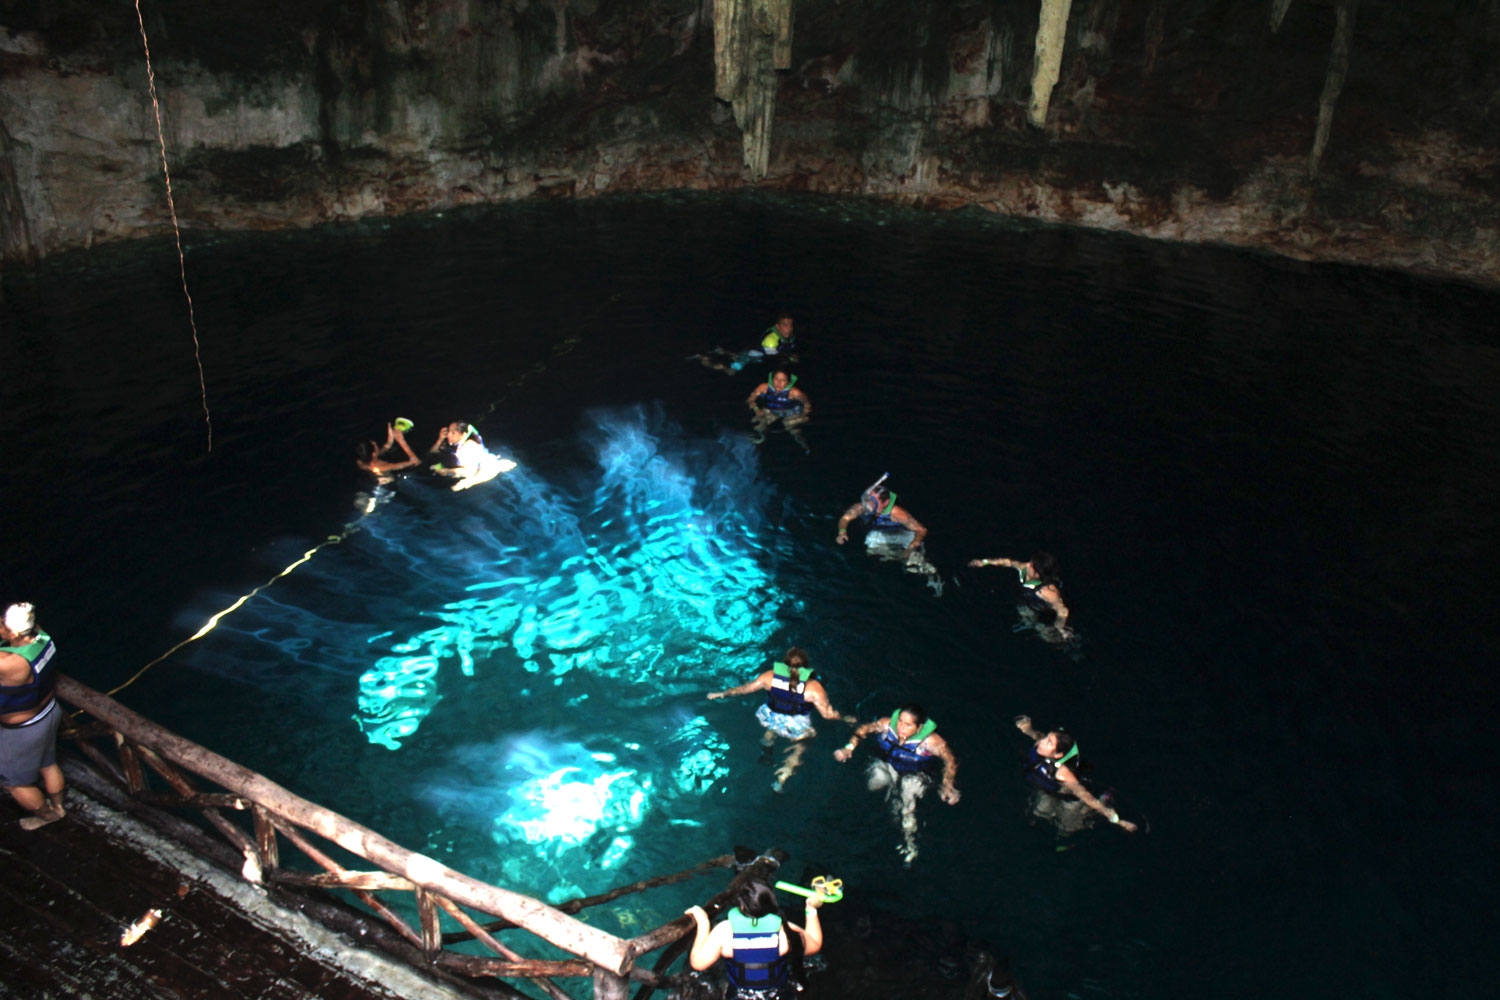 Los Cenotes de Santa Bárbara, aventura subterránea en Homún